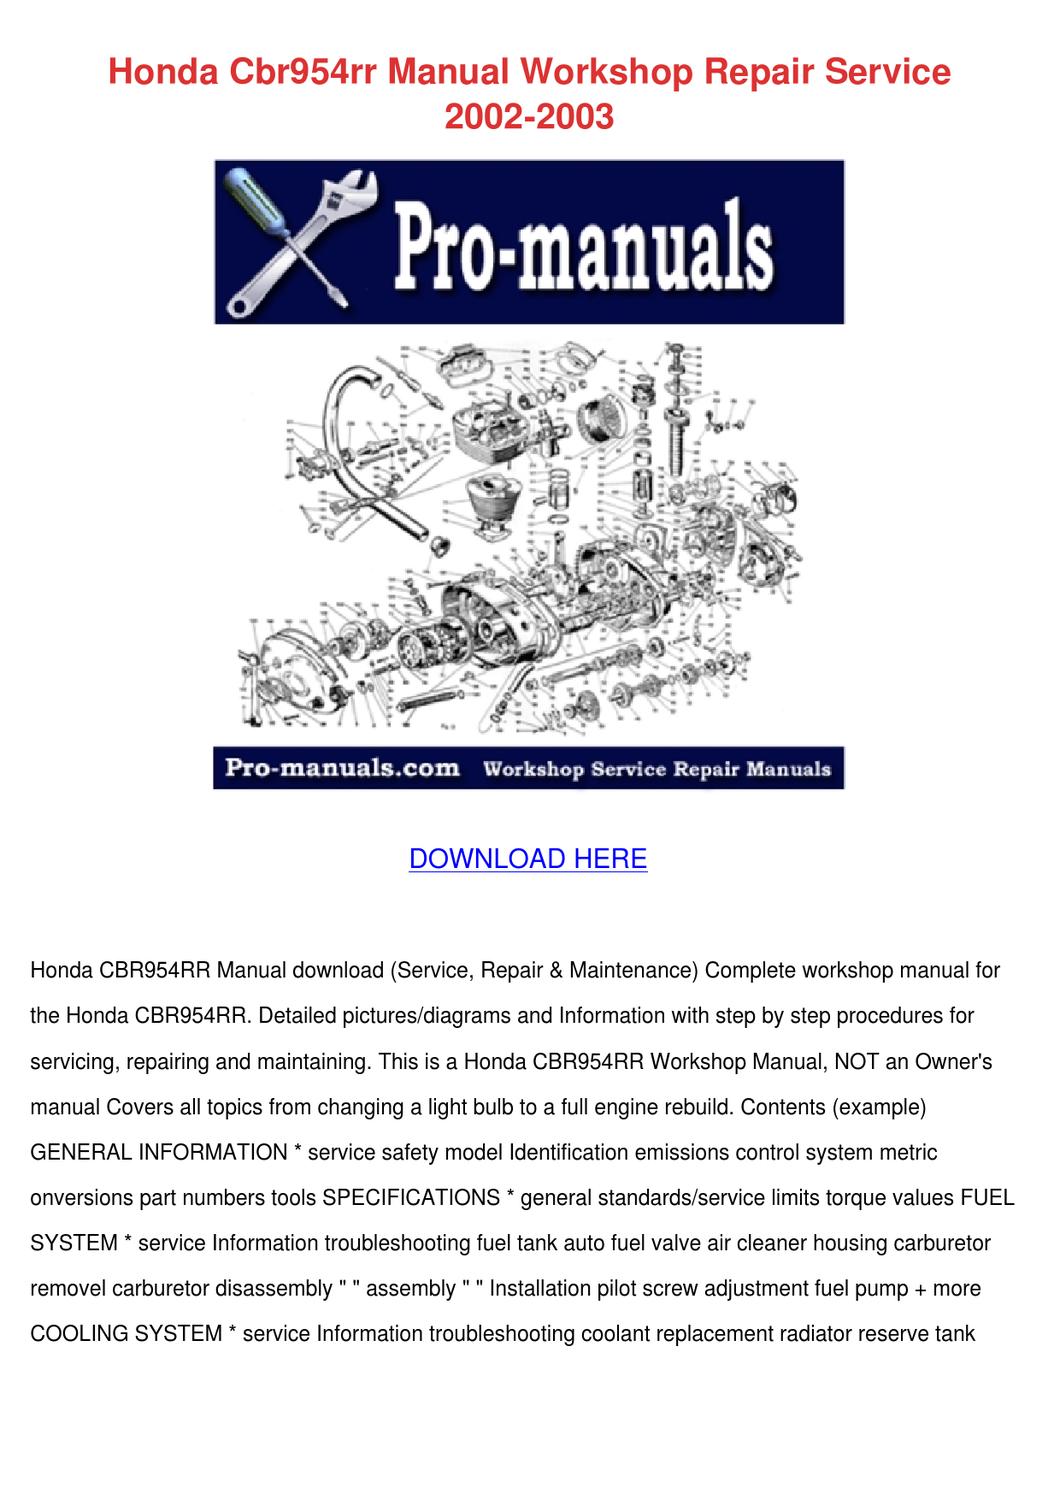 Honda Lead Repair Manual Free Download